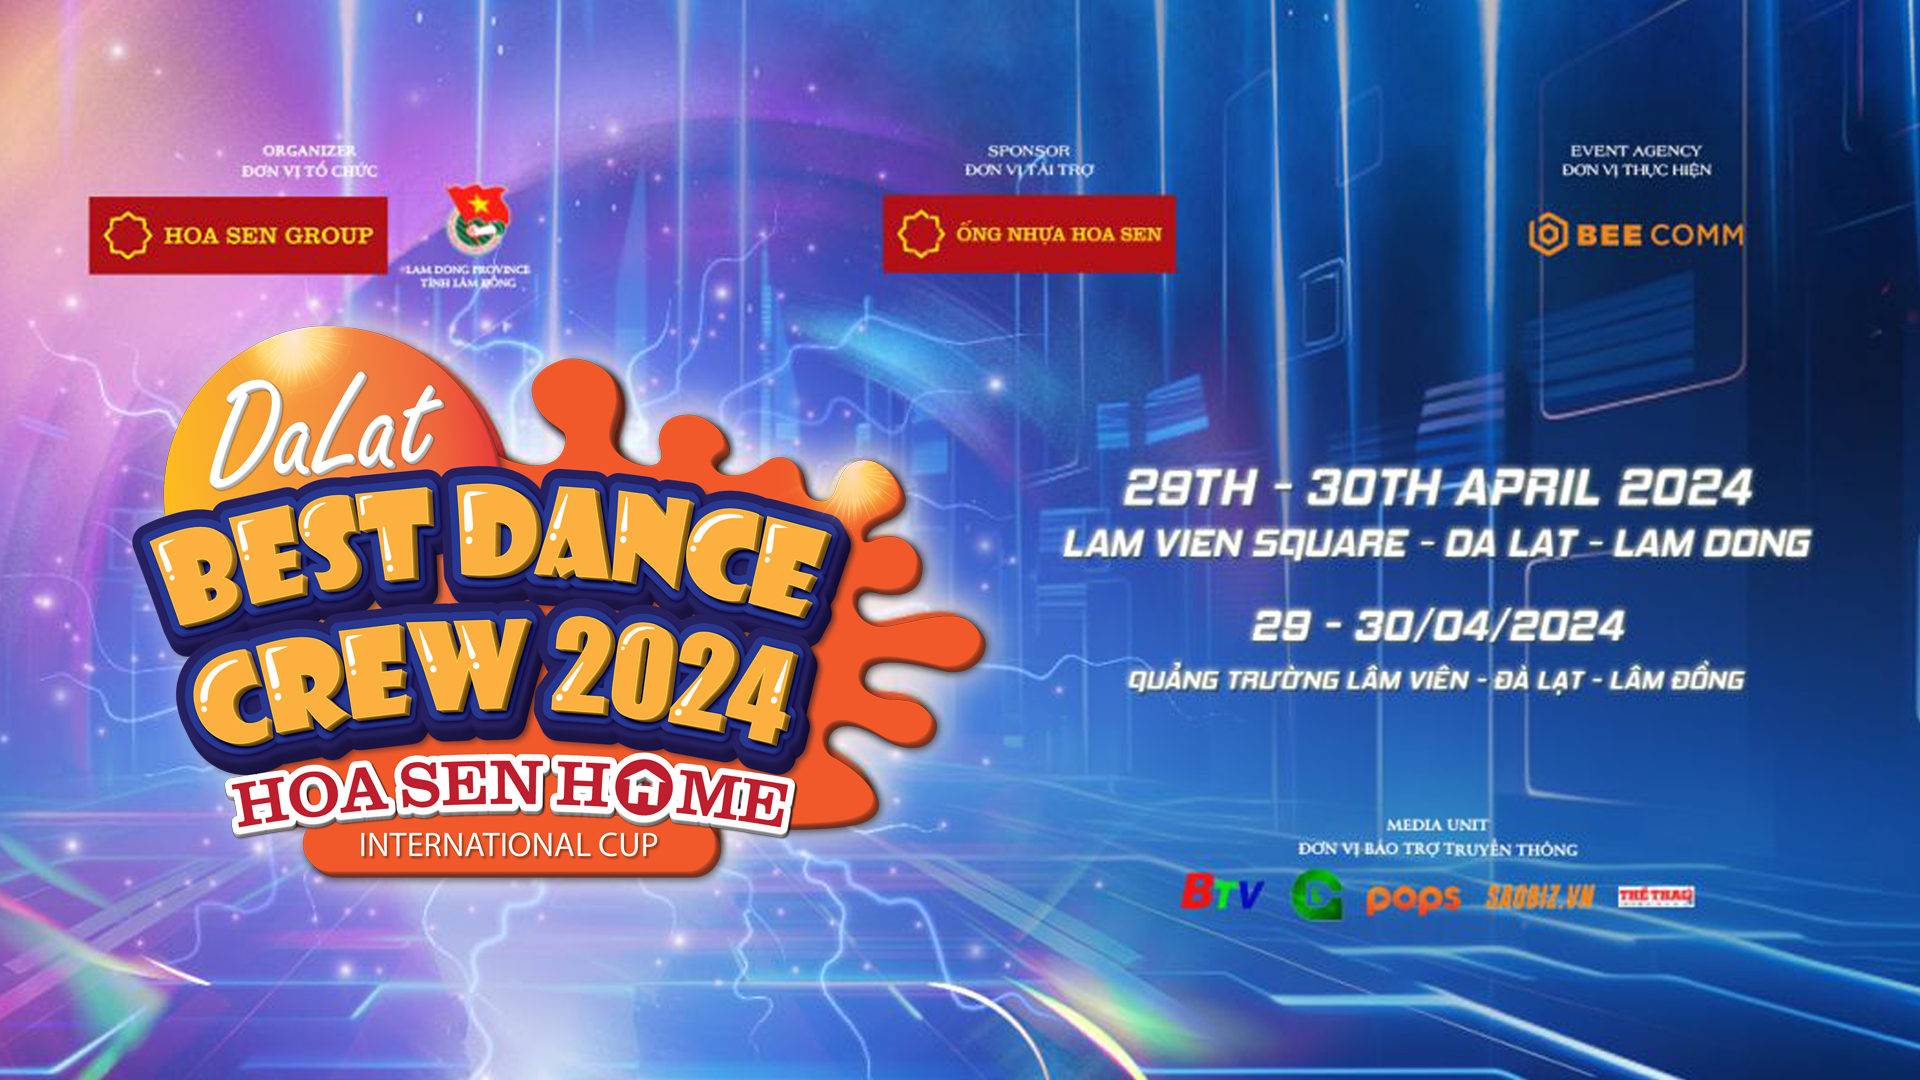 Dalat Best Dance Crew 2024 - Hoa Sen Home International Cup